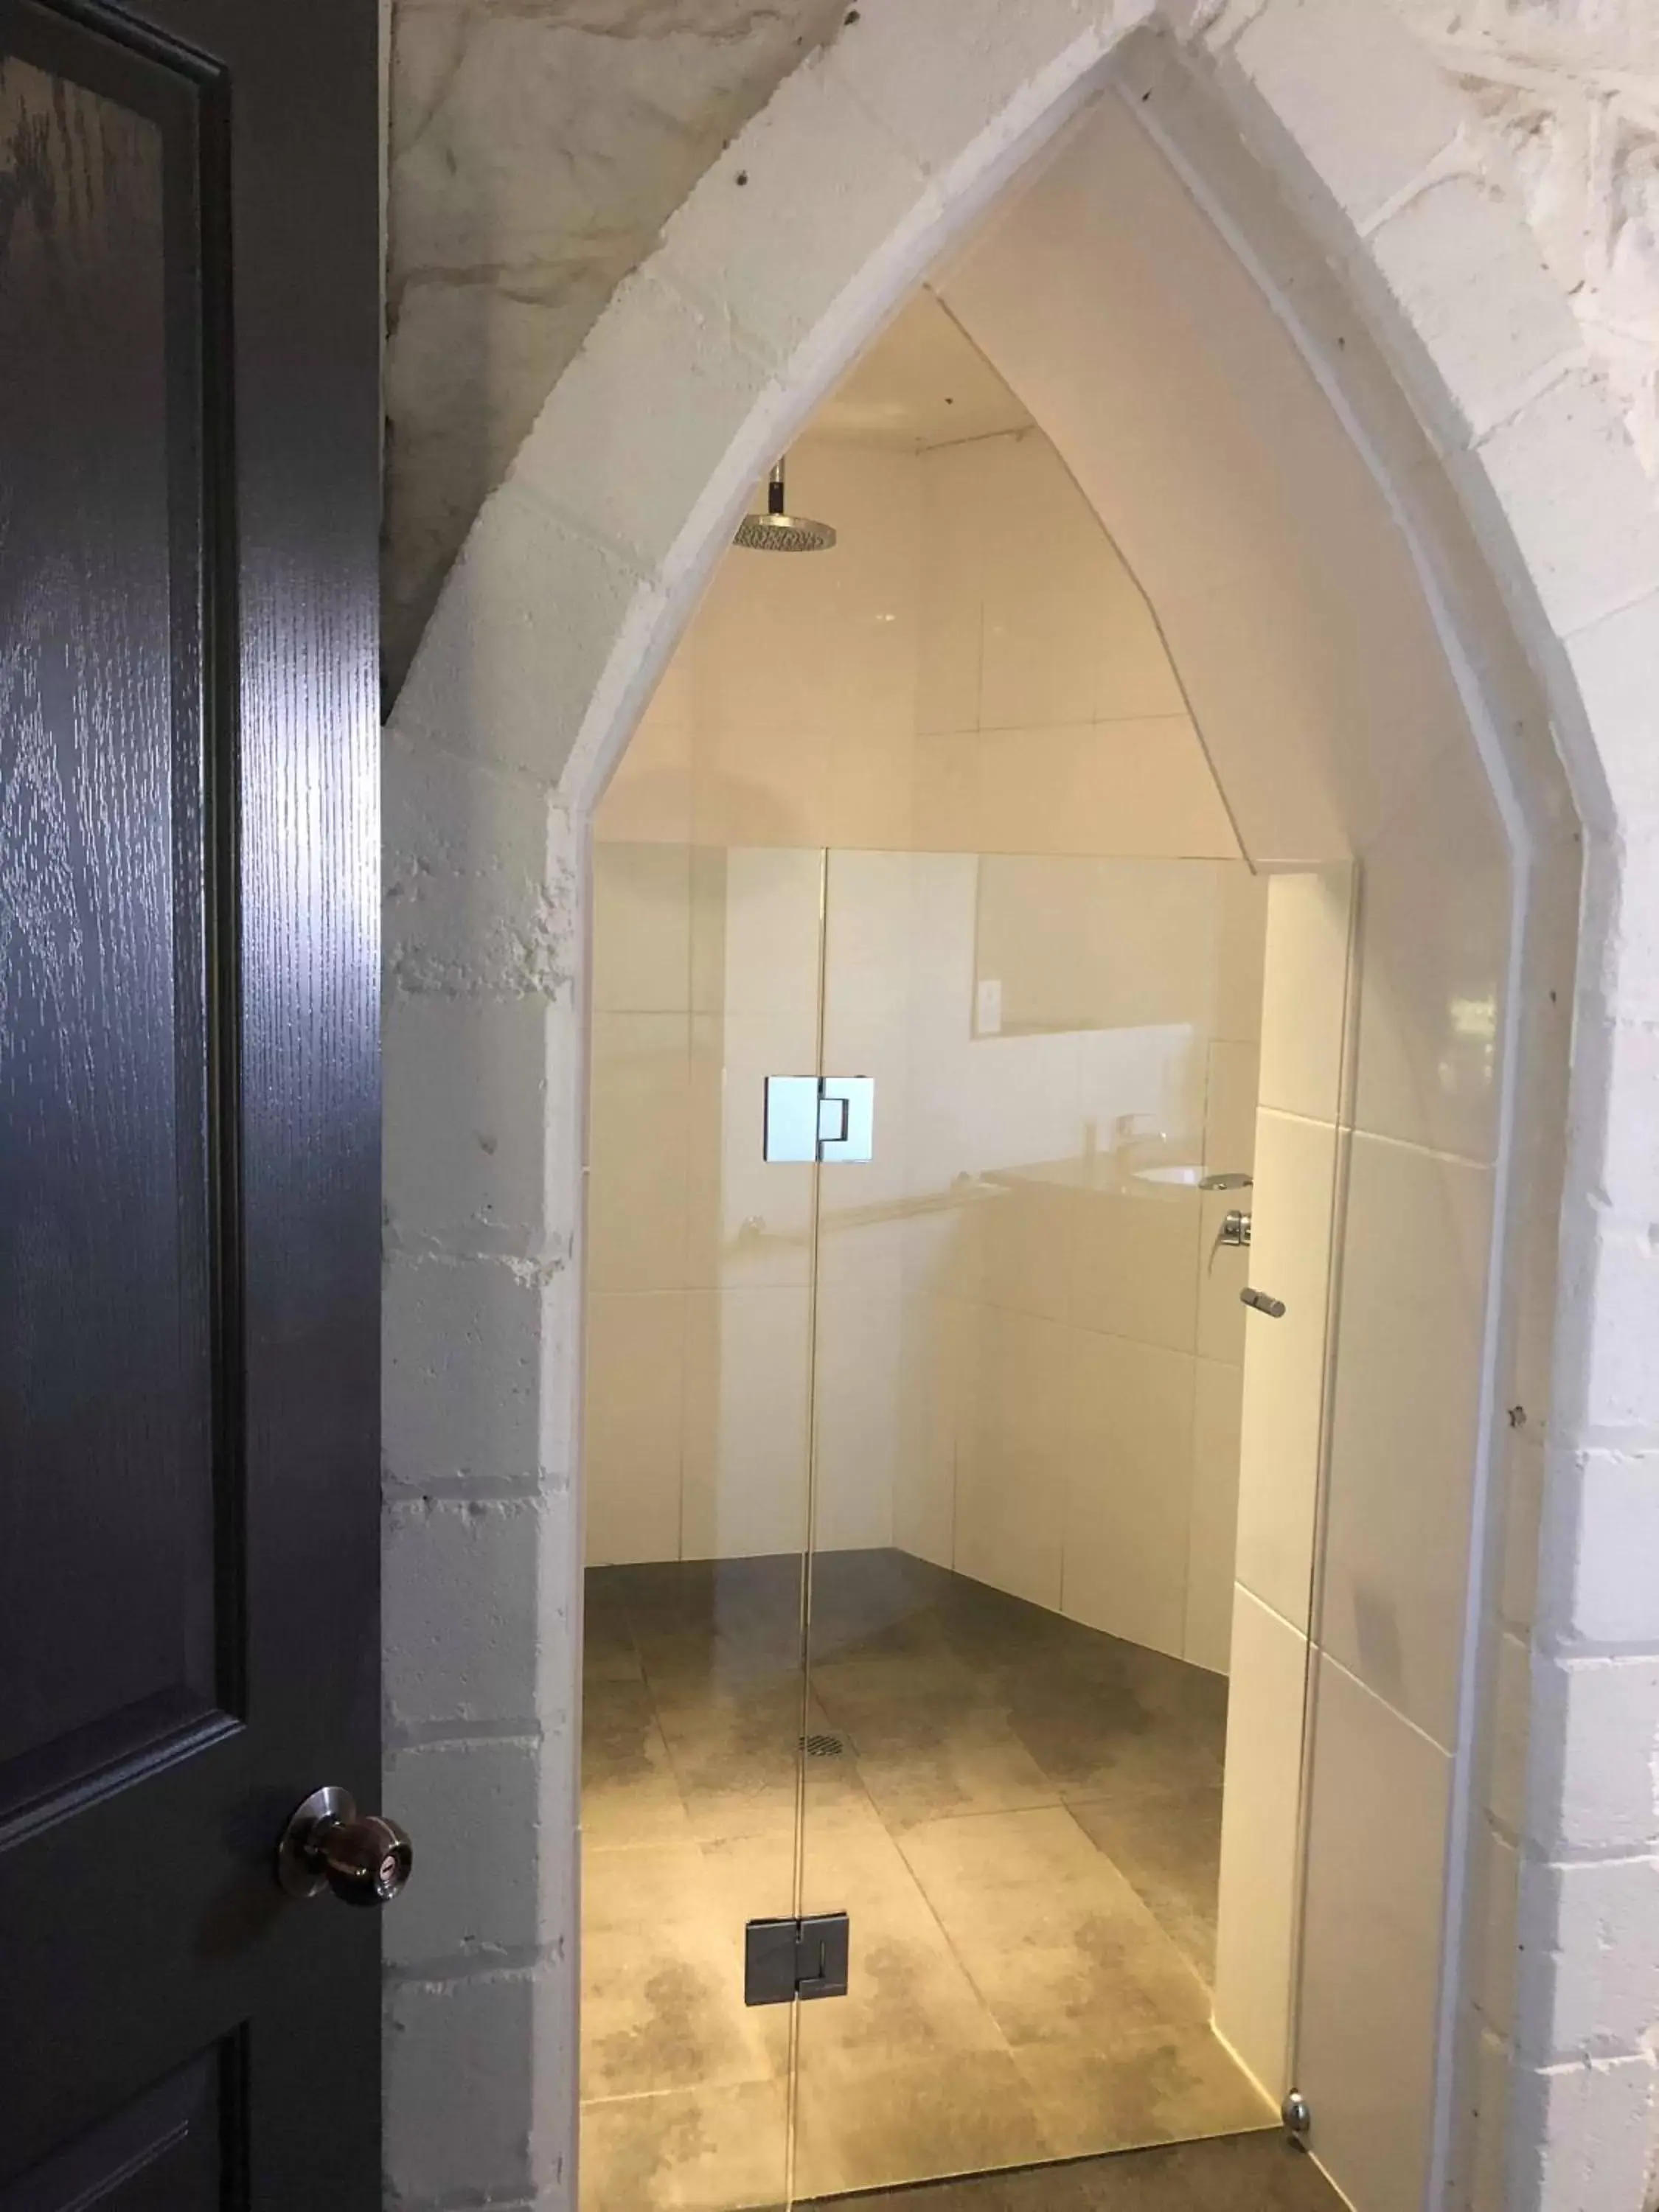 Bathroom in Kryal Castle Ballarat